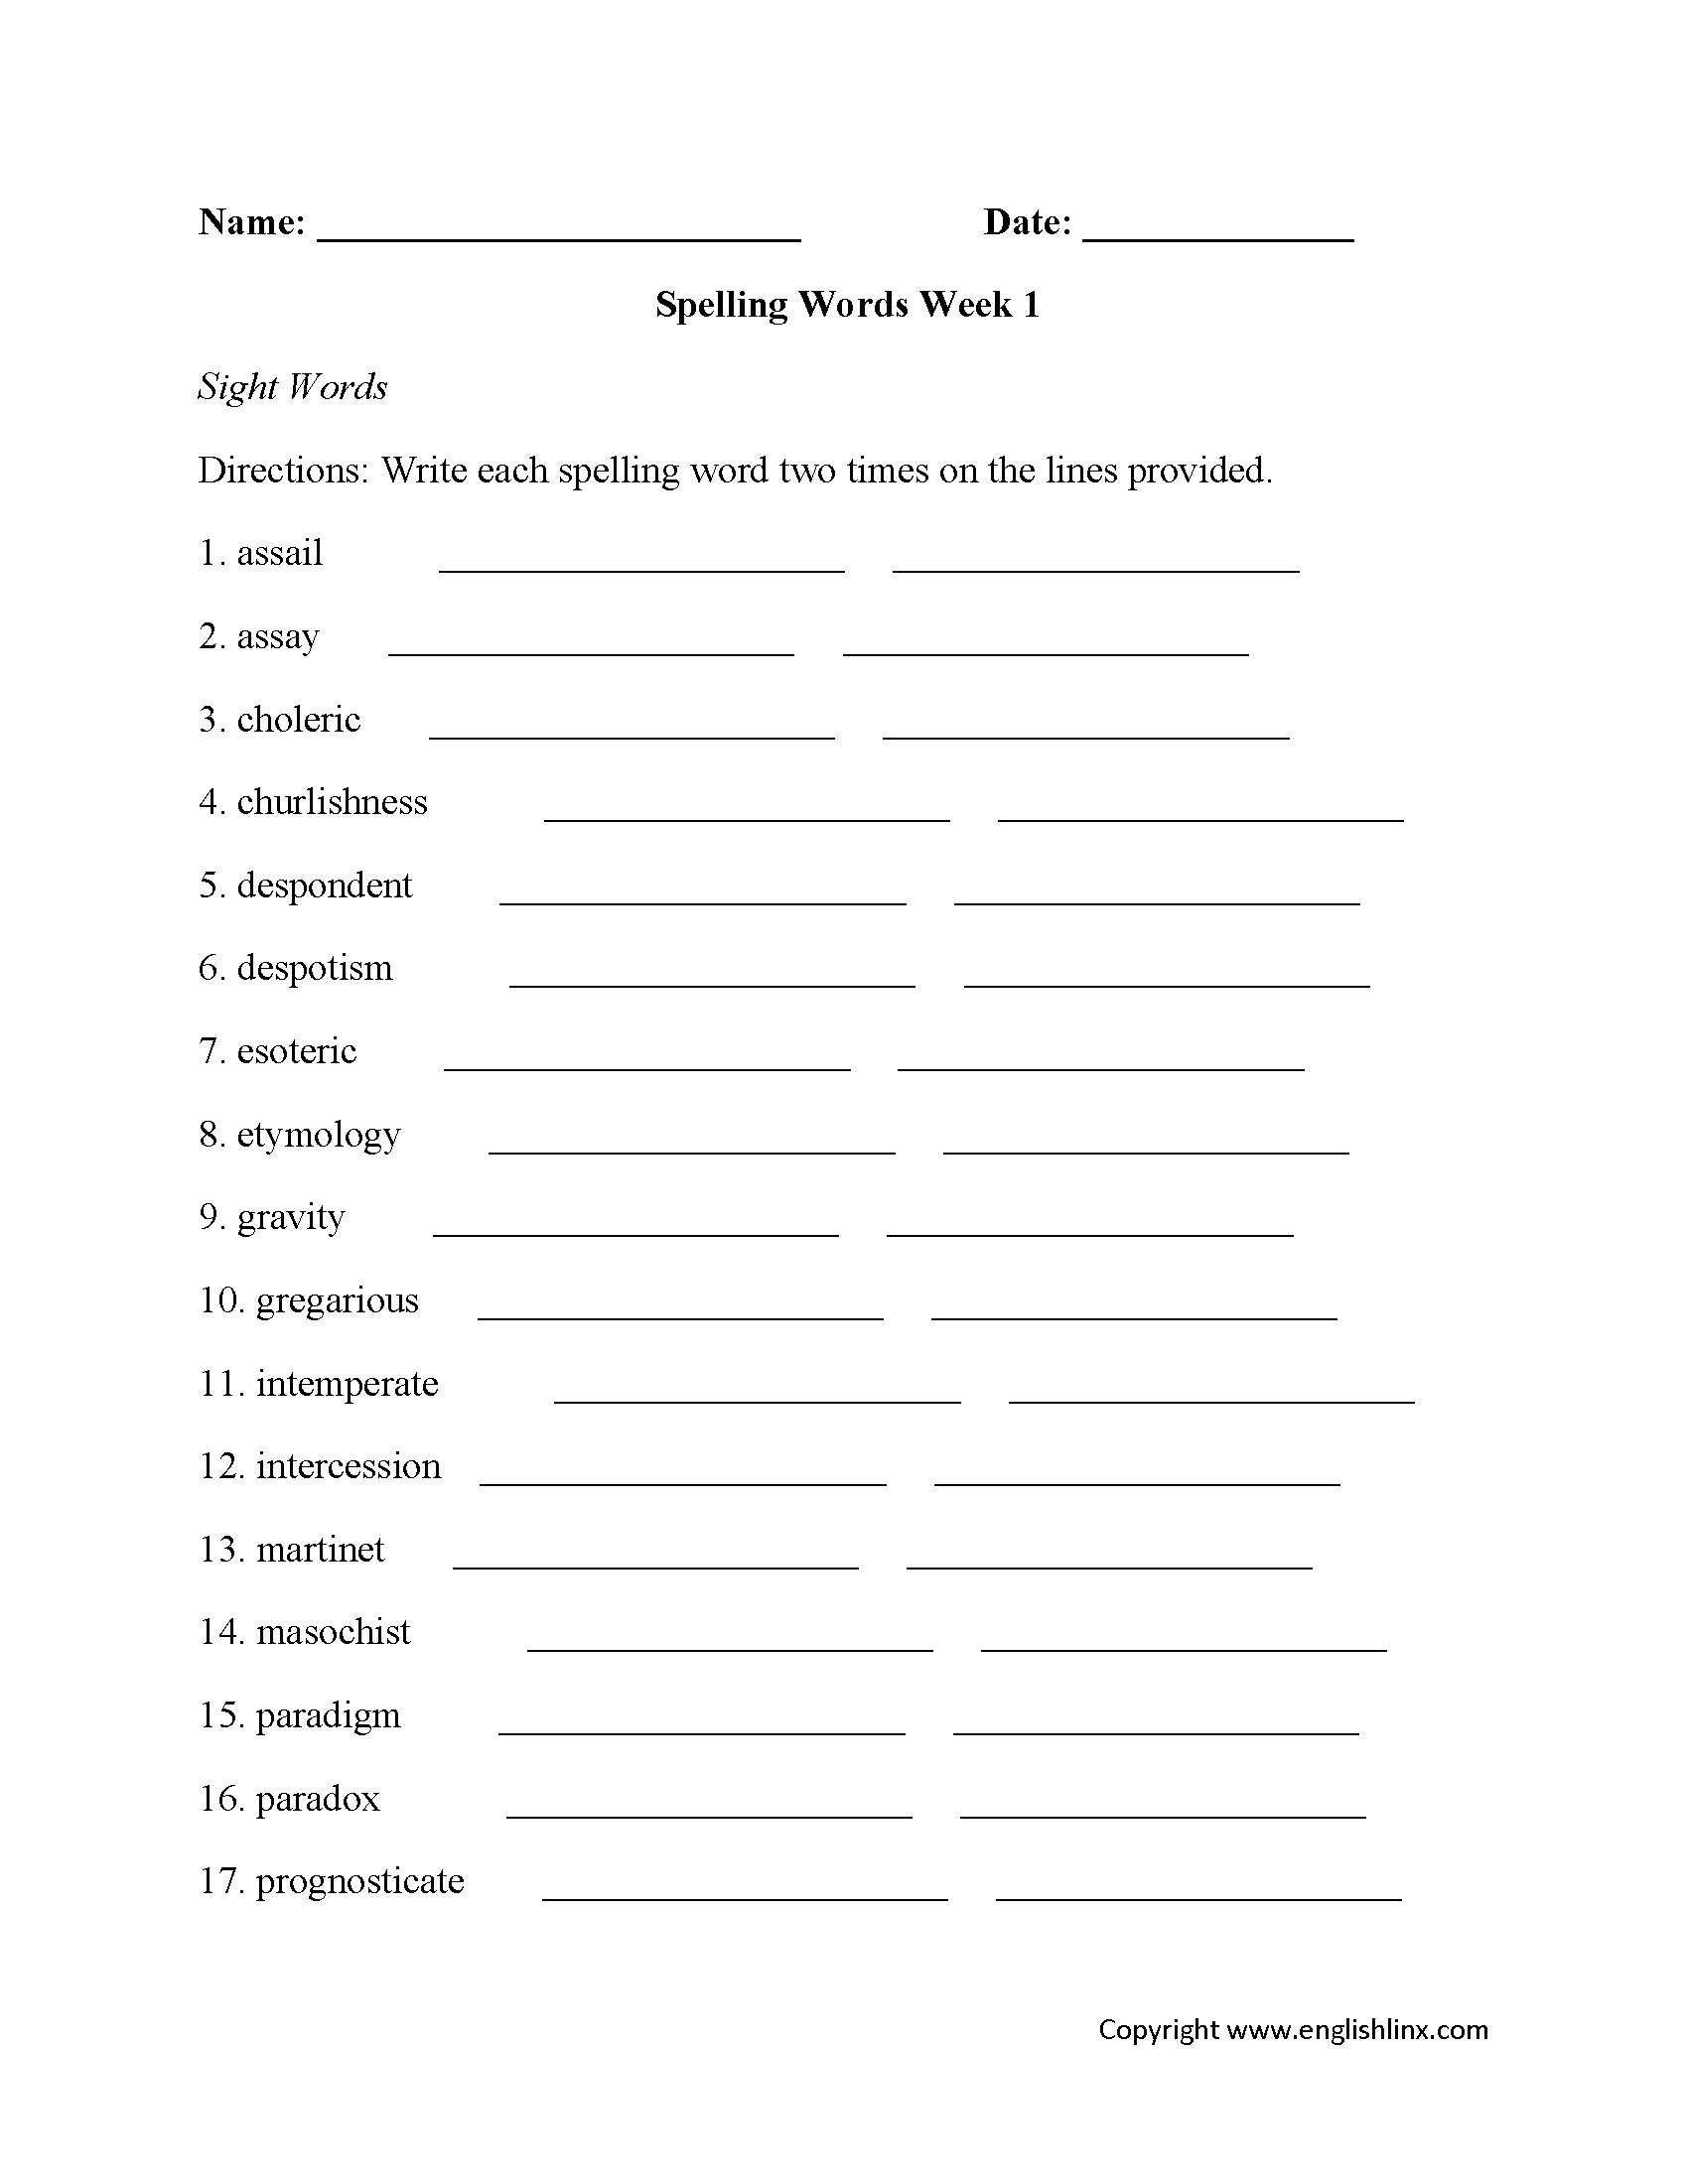 High School Spelling Worksheets